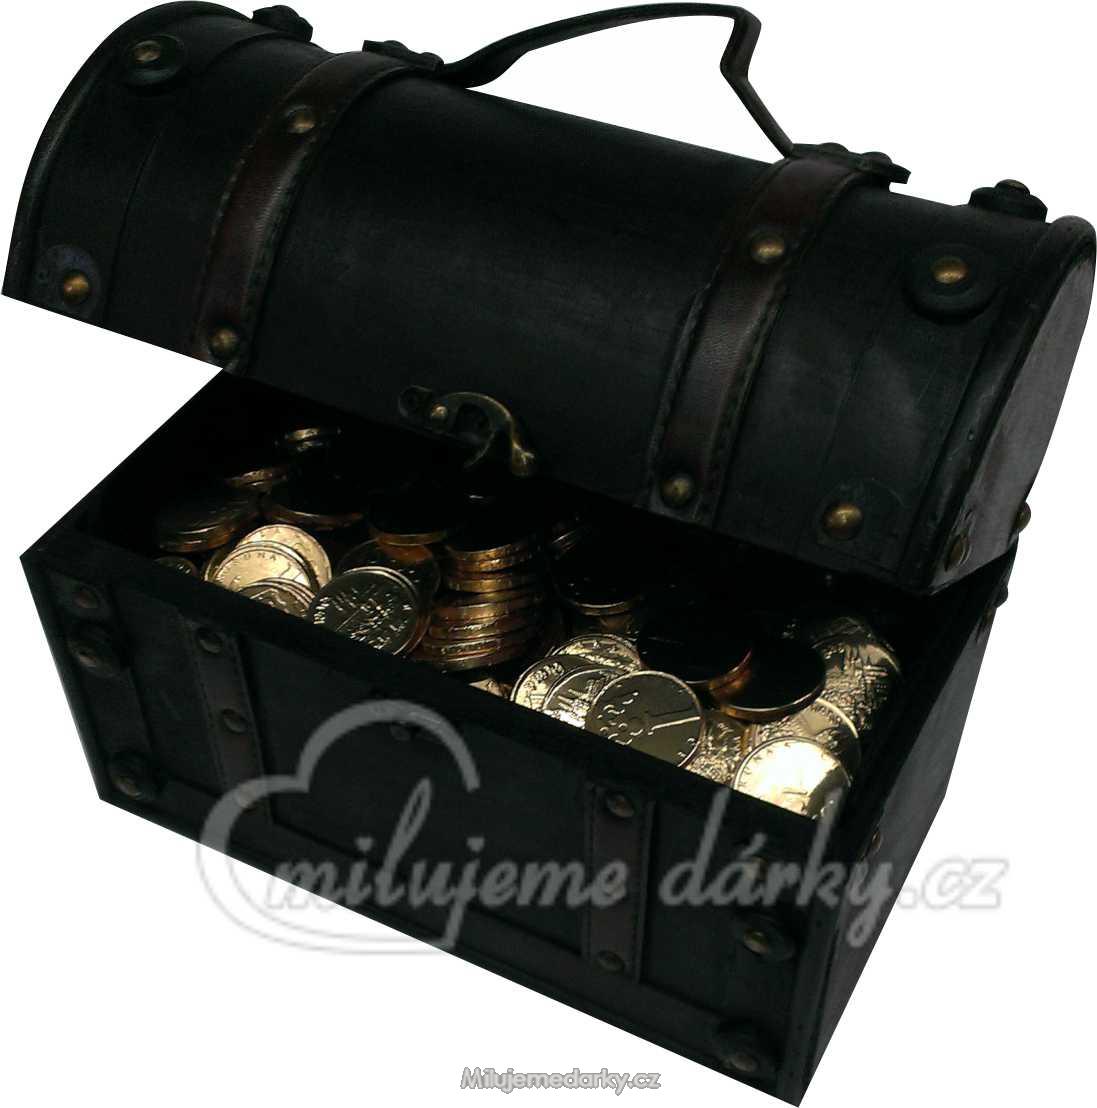 Střední dřevěná dárková truhla s koženými pásky naplněná čokoládovými mincemi